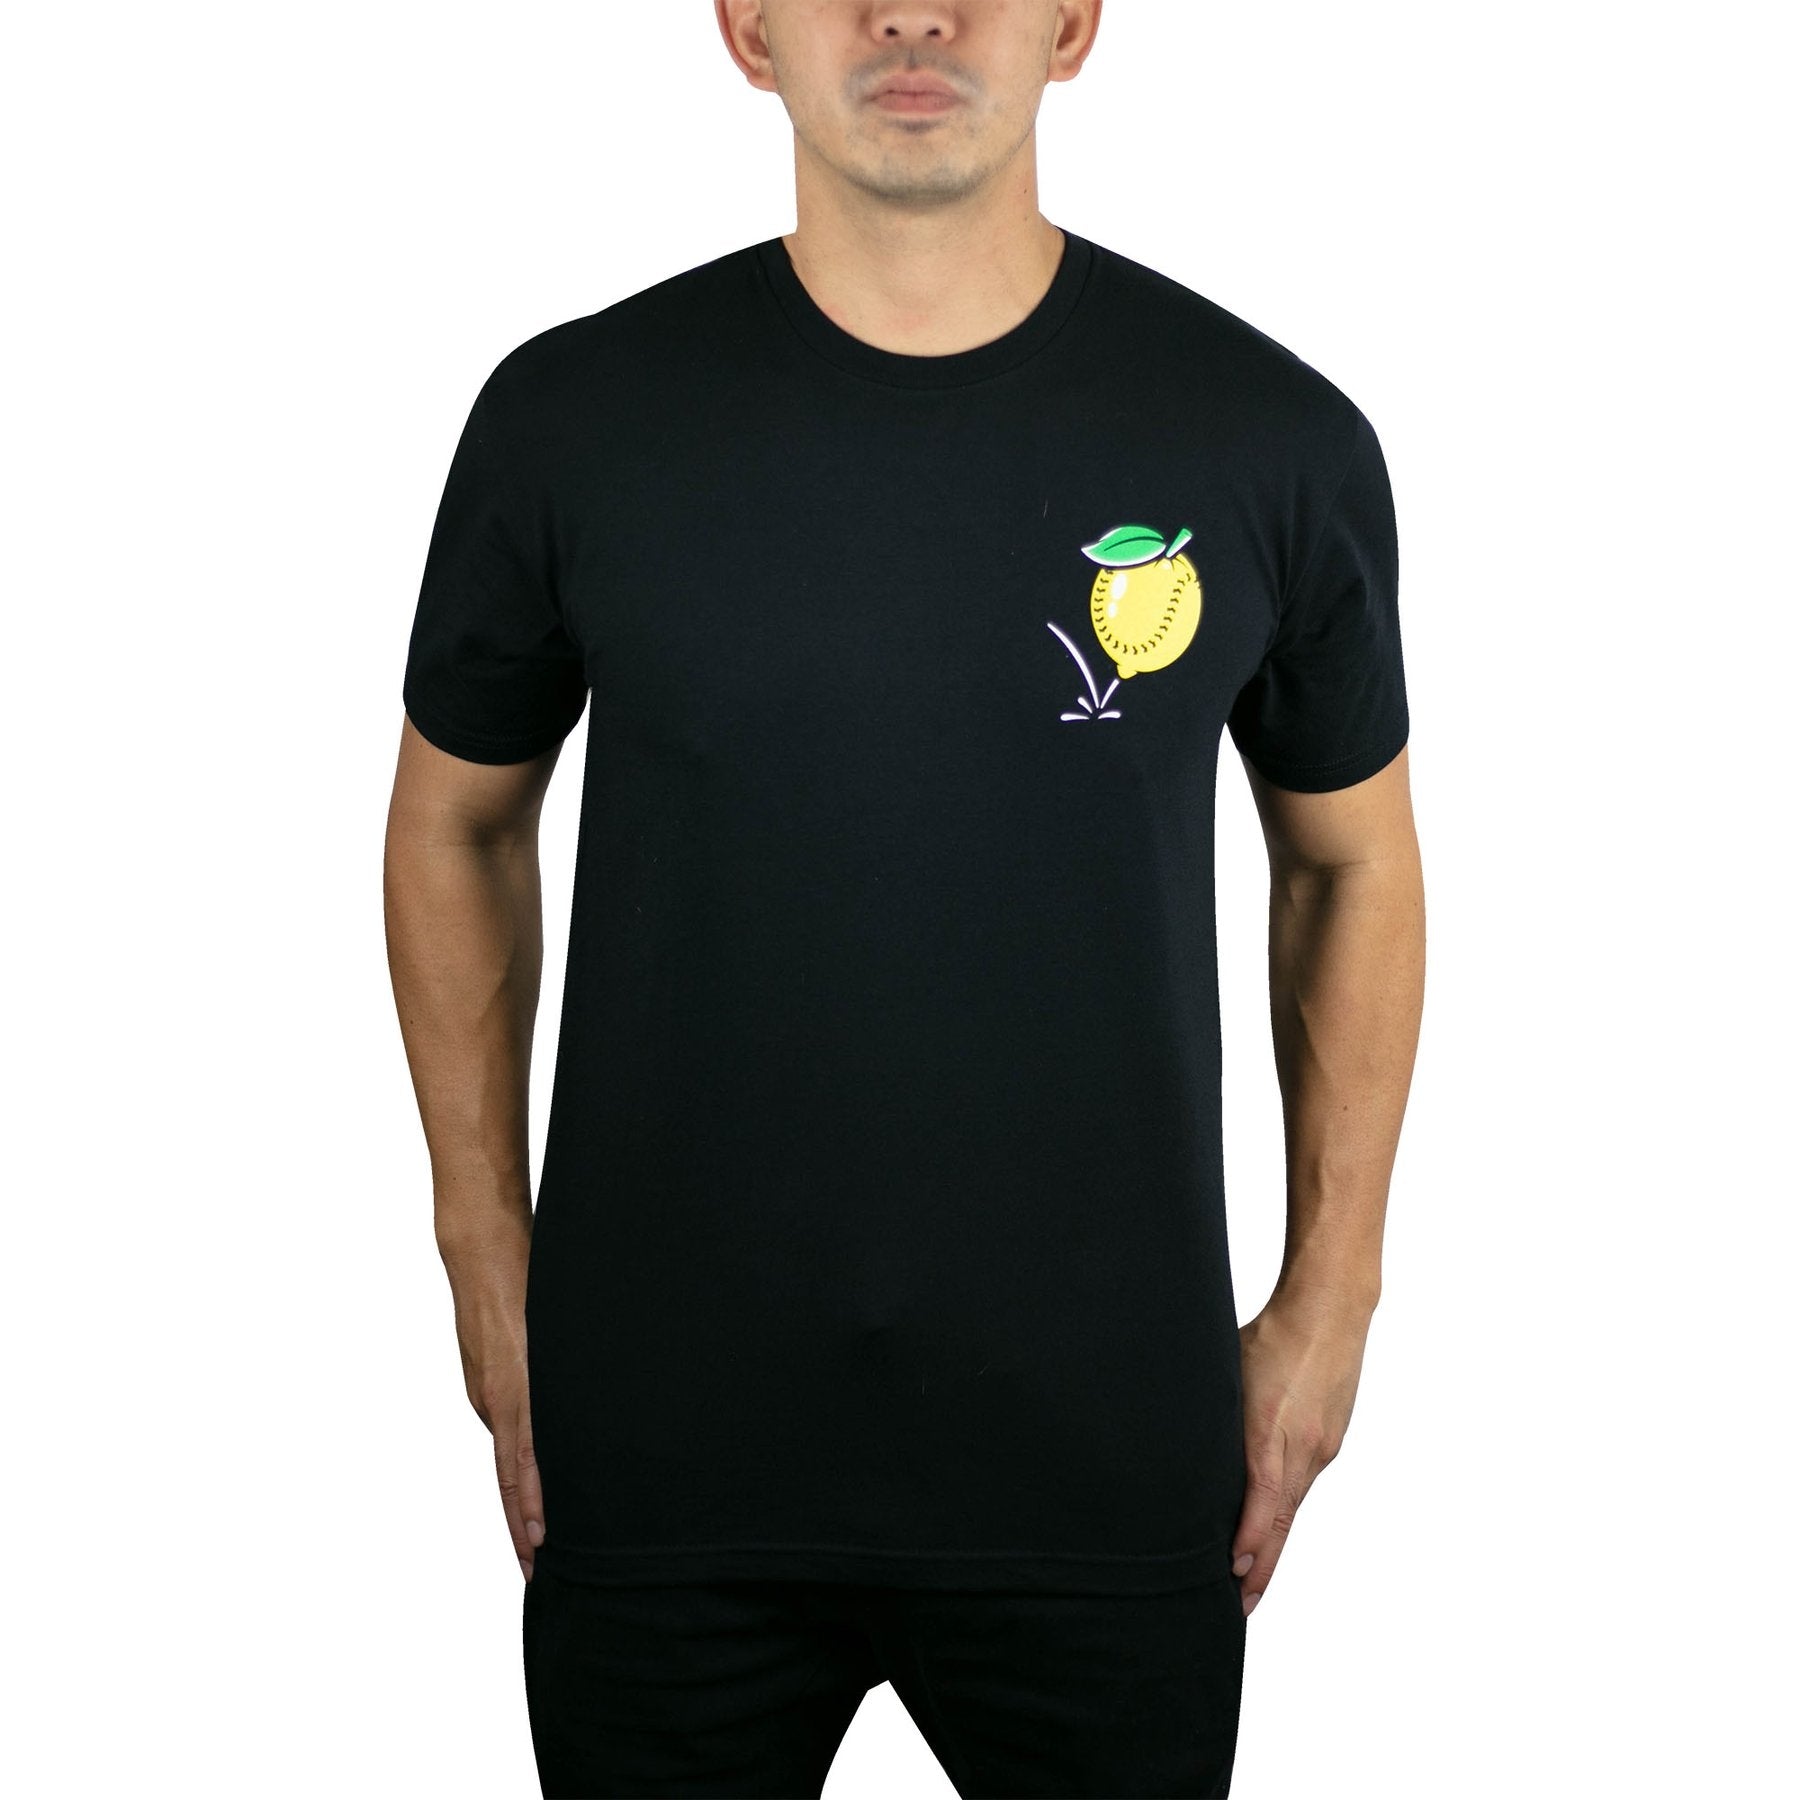 Baseballism - Lemonade 2.0 Black T-Shirt (Men's)